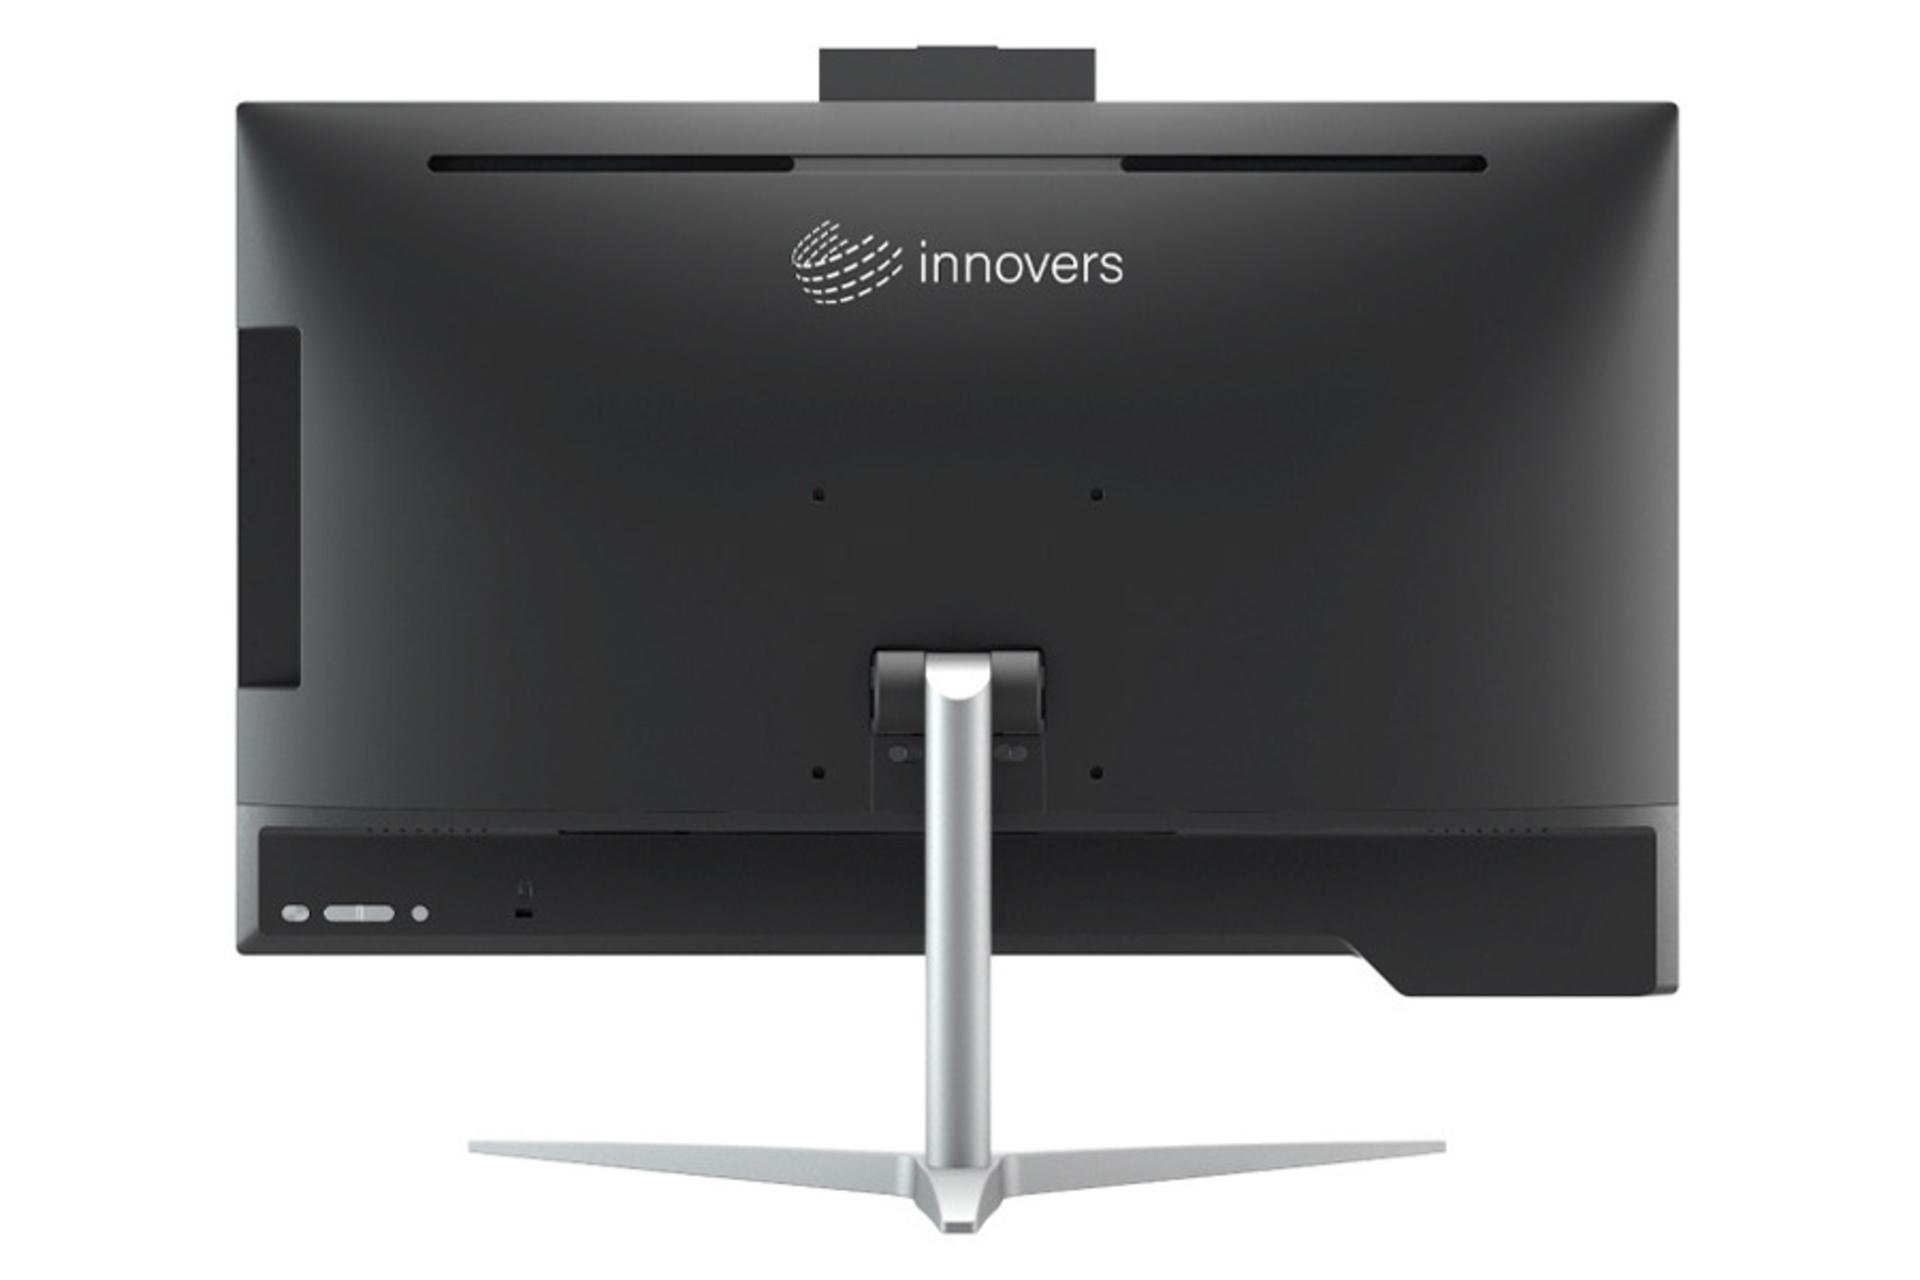 نمای پشت کامپیوتر همه کاره All in One innovers X2414B همراه وب کم